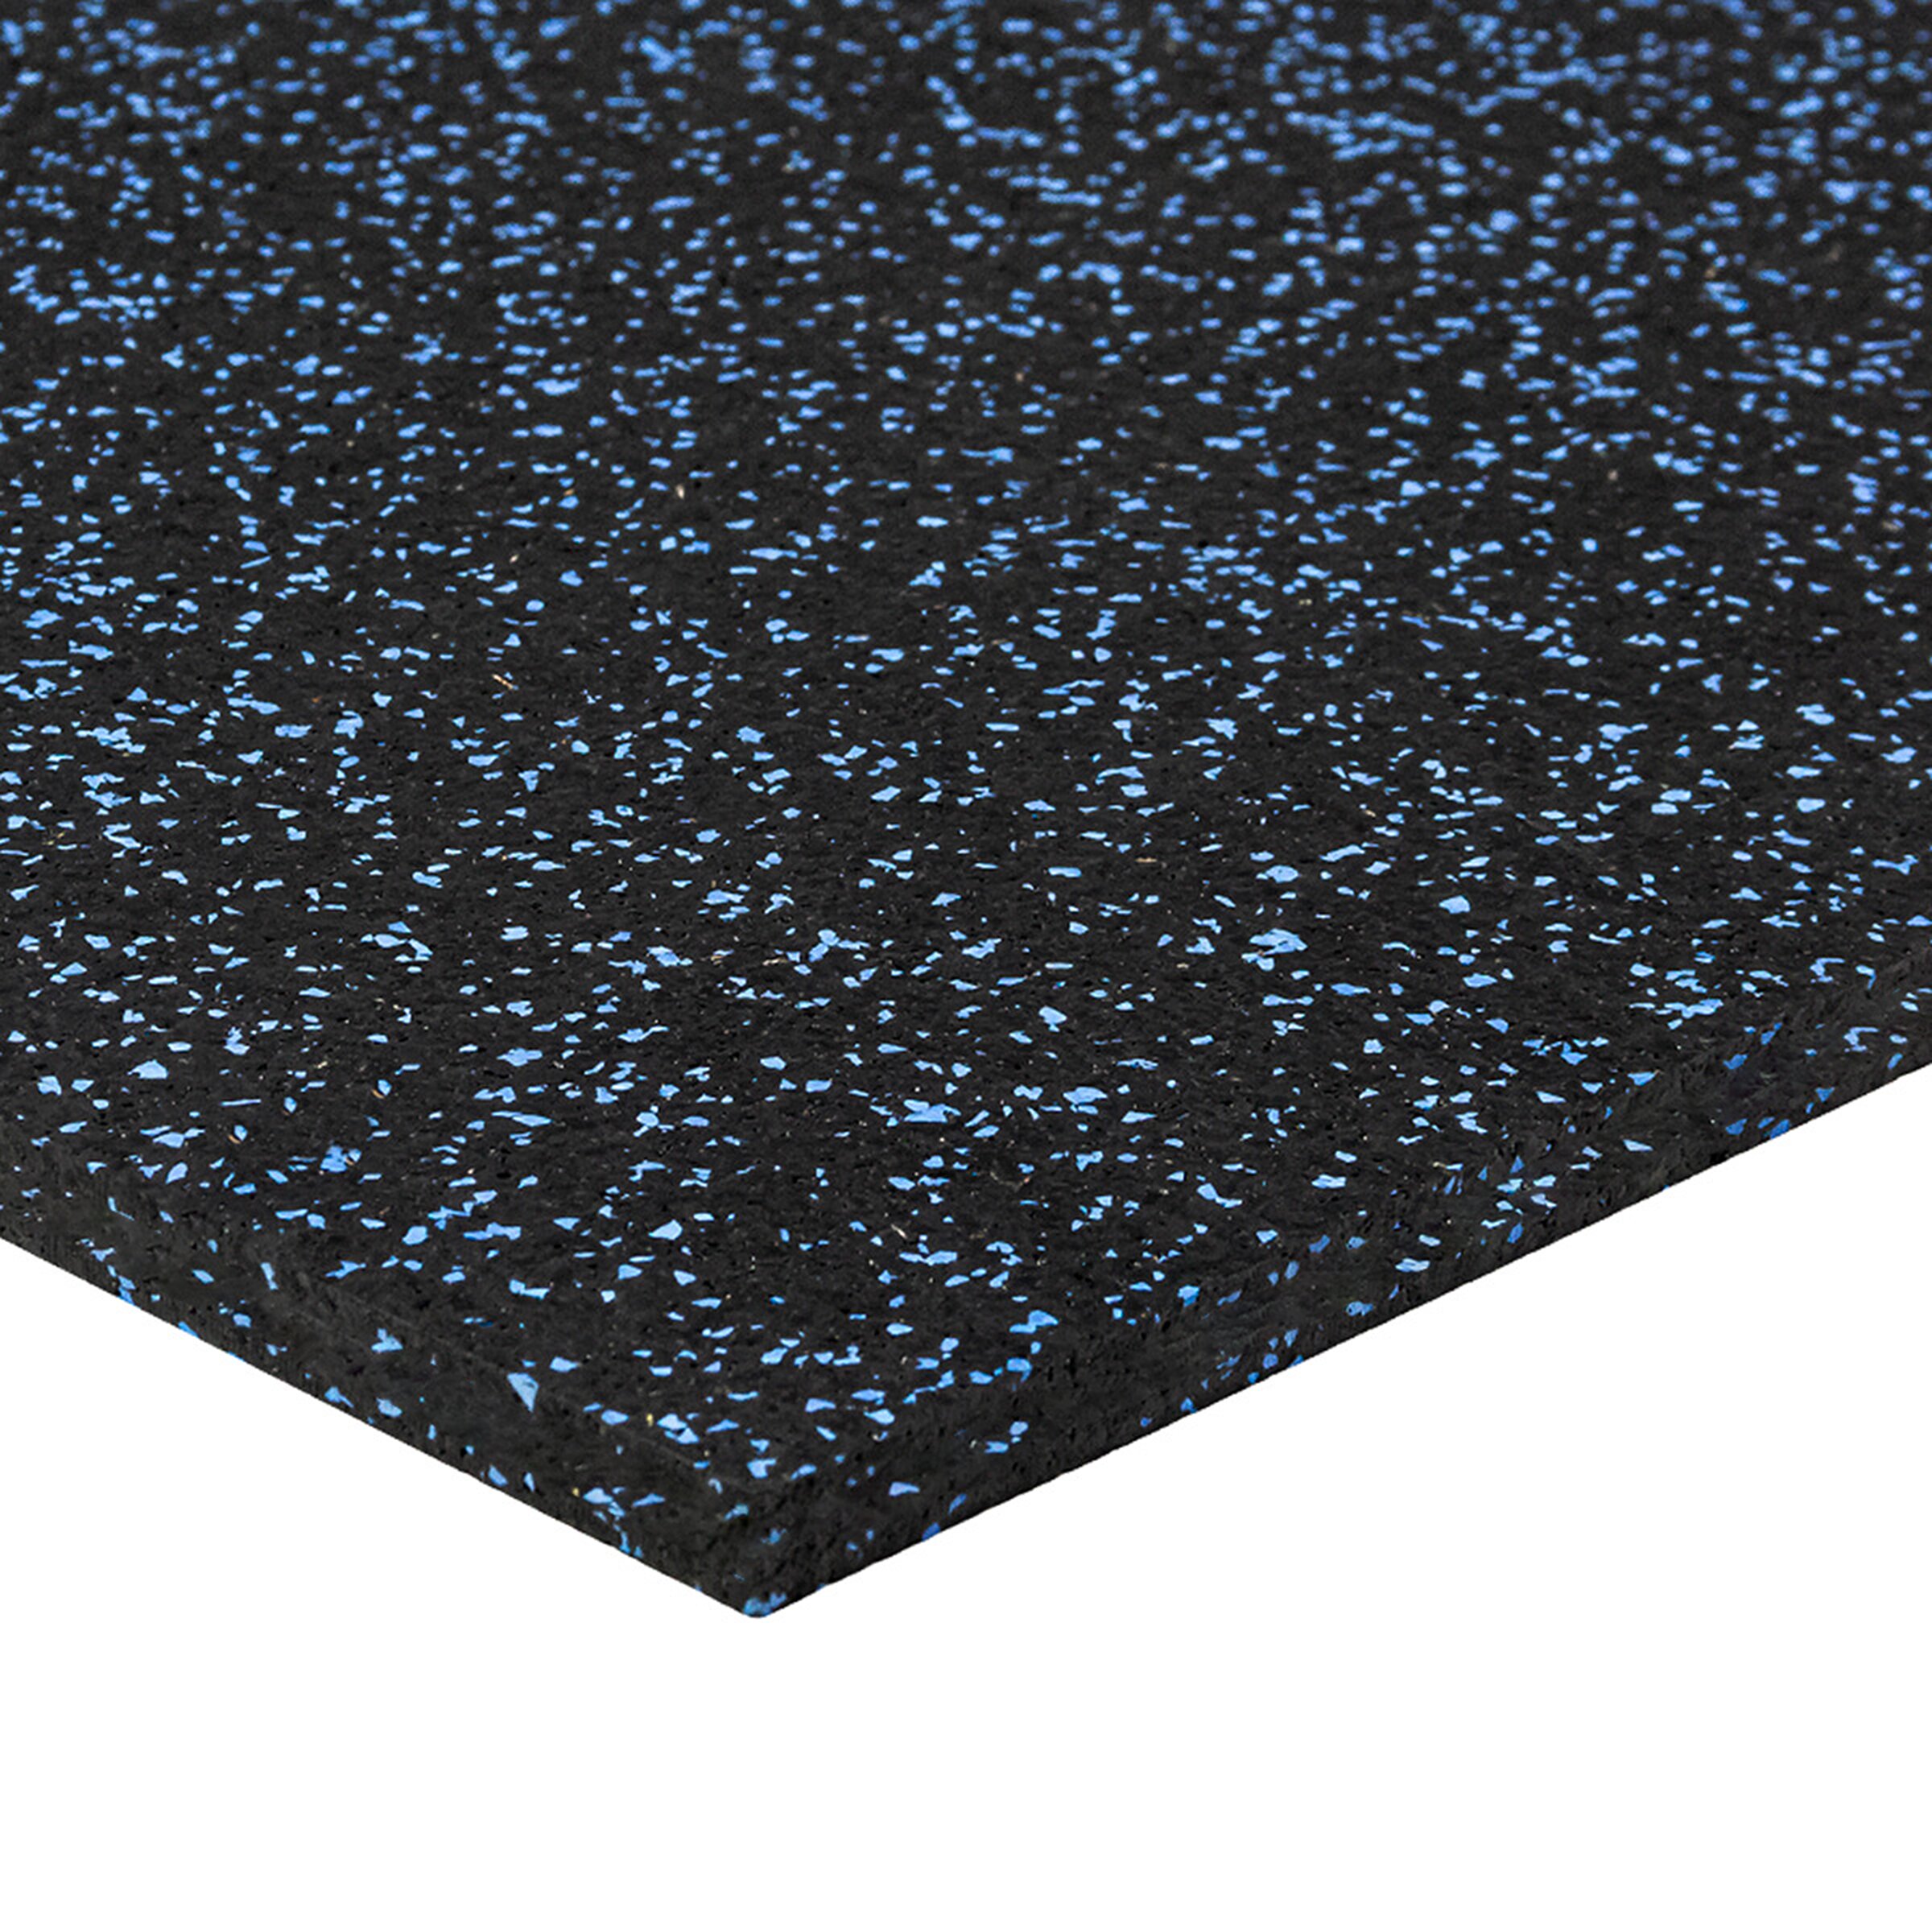 Čierno-modrá gumová modulová puzzle dlažba (stred) FLOMA FitFlo SF1050 - dĺžka 50 cm, šírka 50 cm, výška 1,6 cm